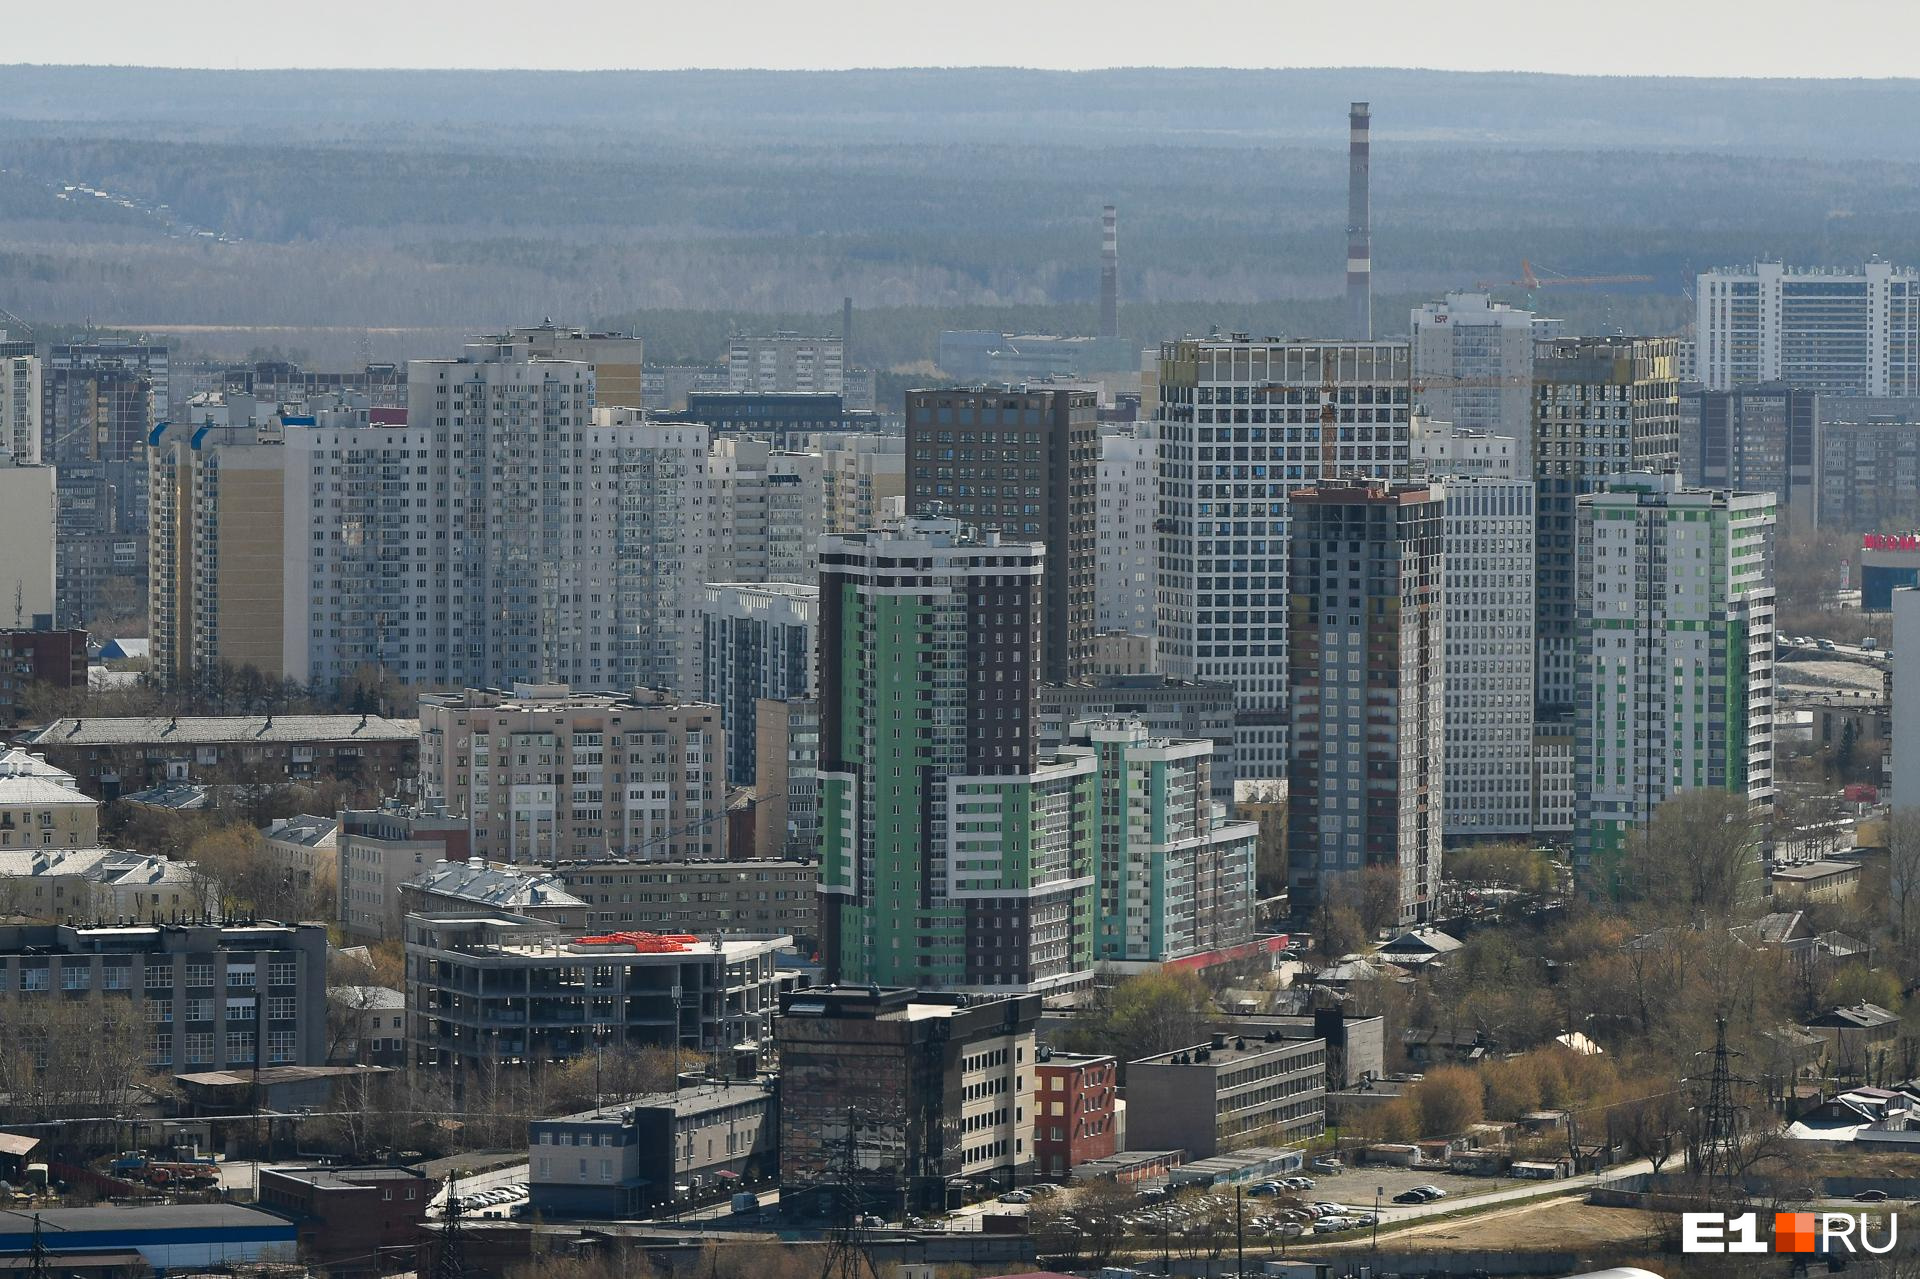 Через 11 лет в России у каждой семьи будет две квартиры и дача. Что об этом думают екатеринбуржцы?